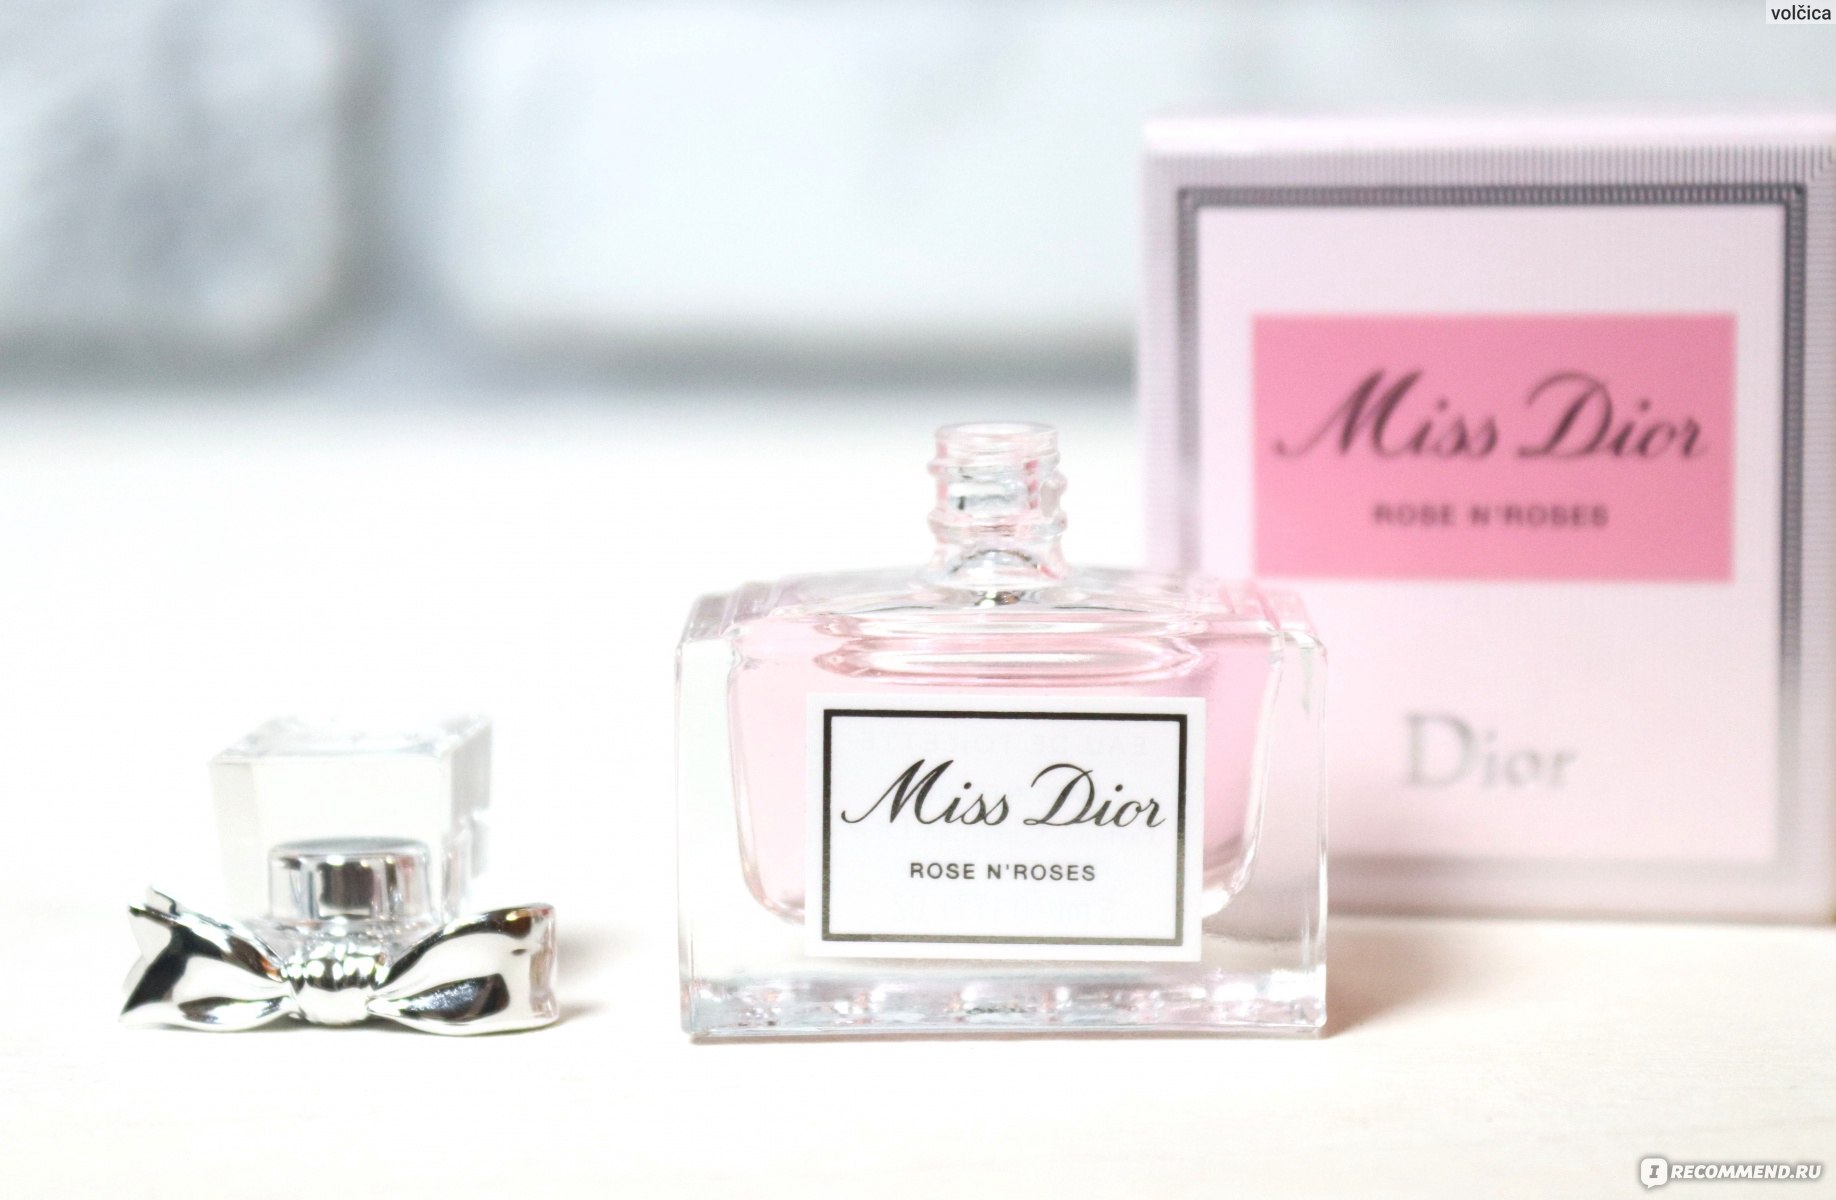 Dior - Rose n'Roses (2020)